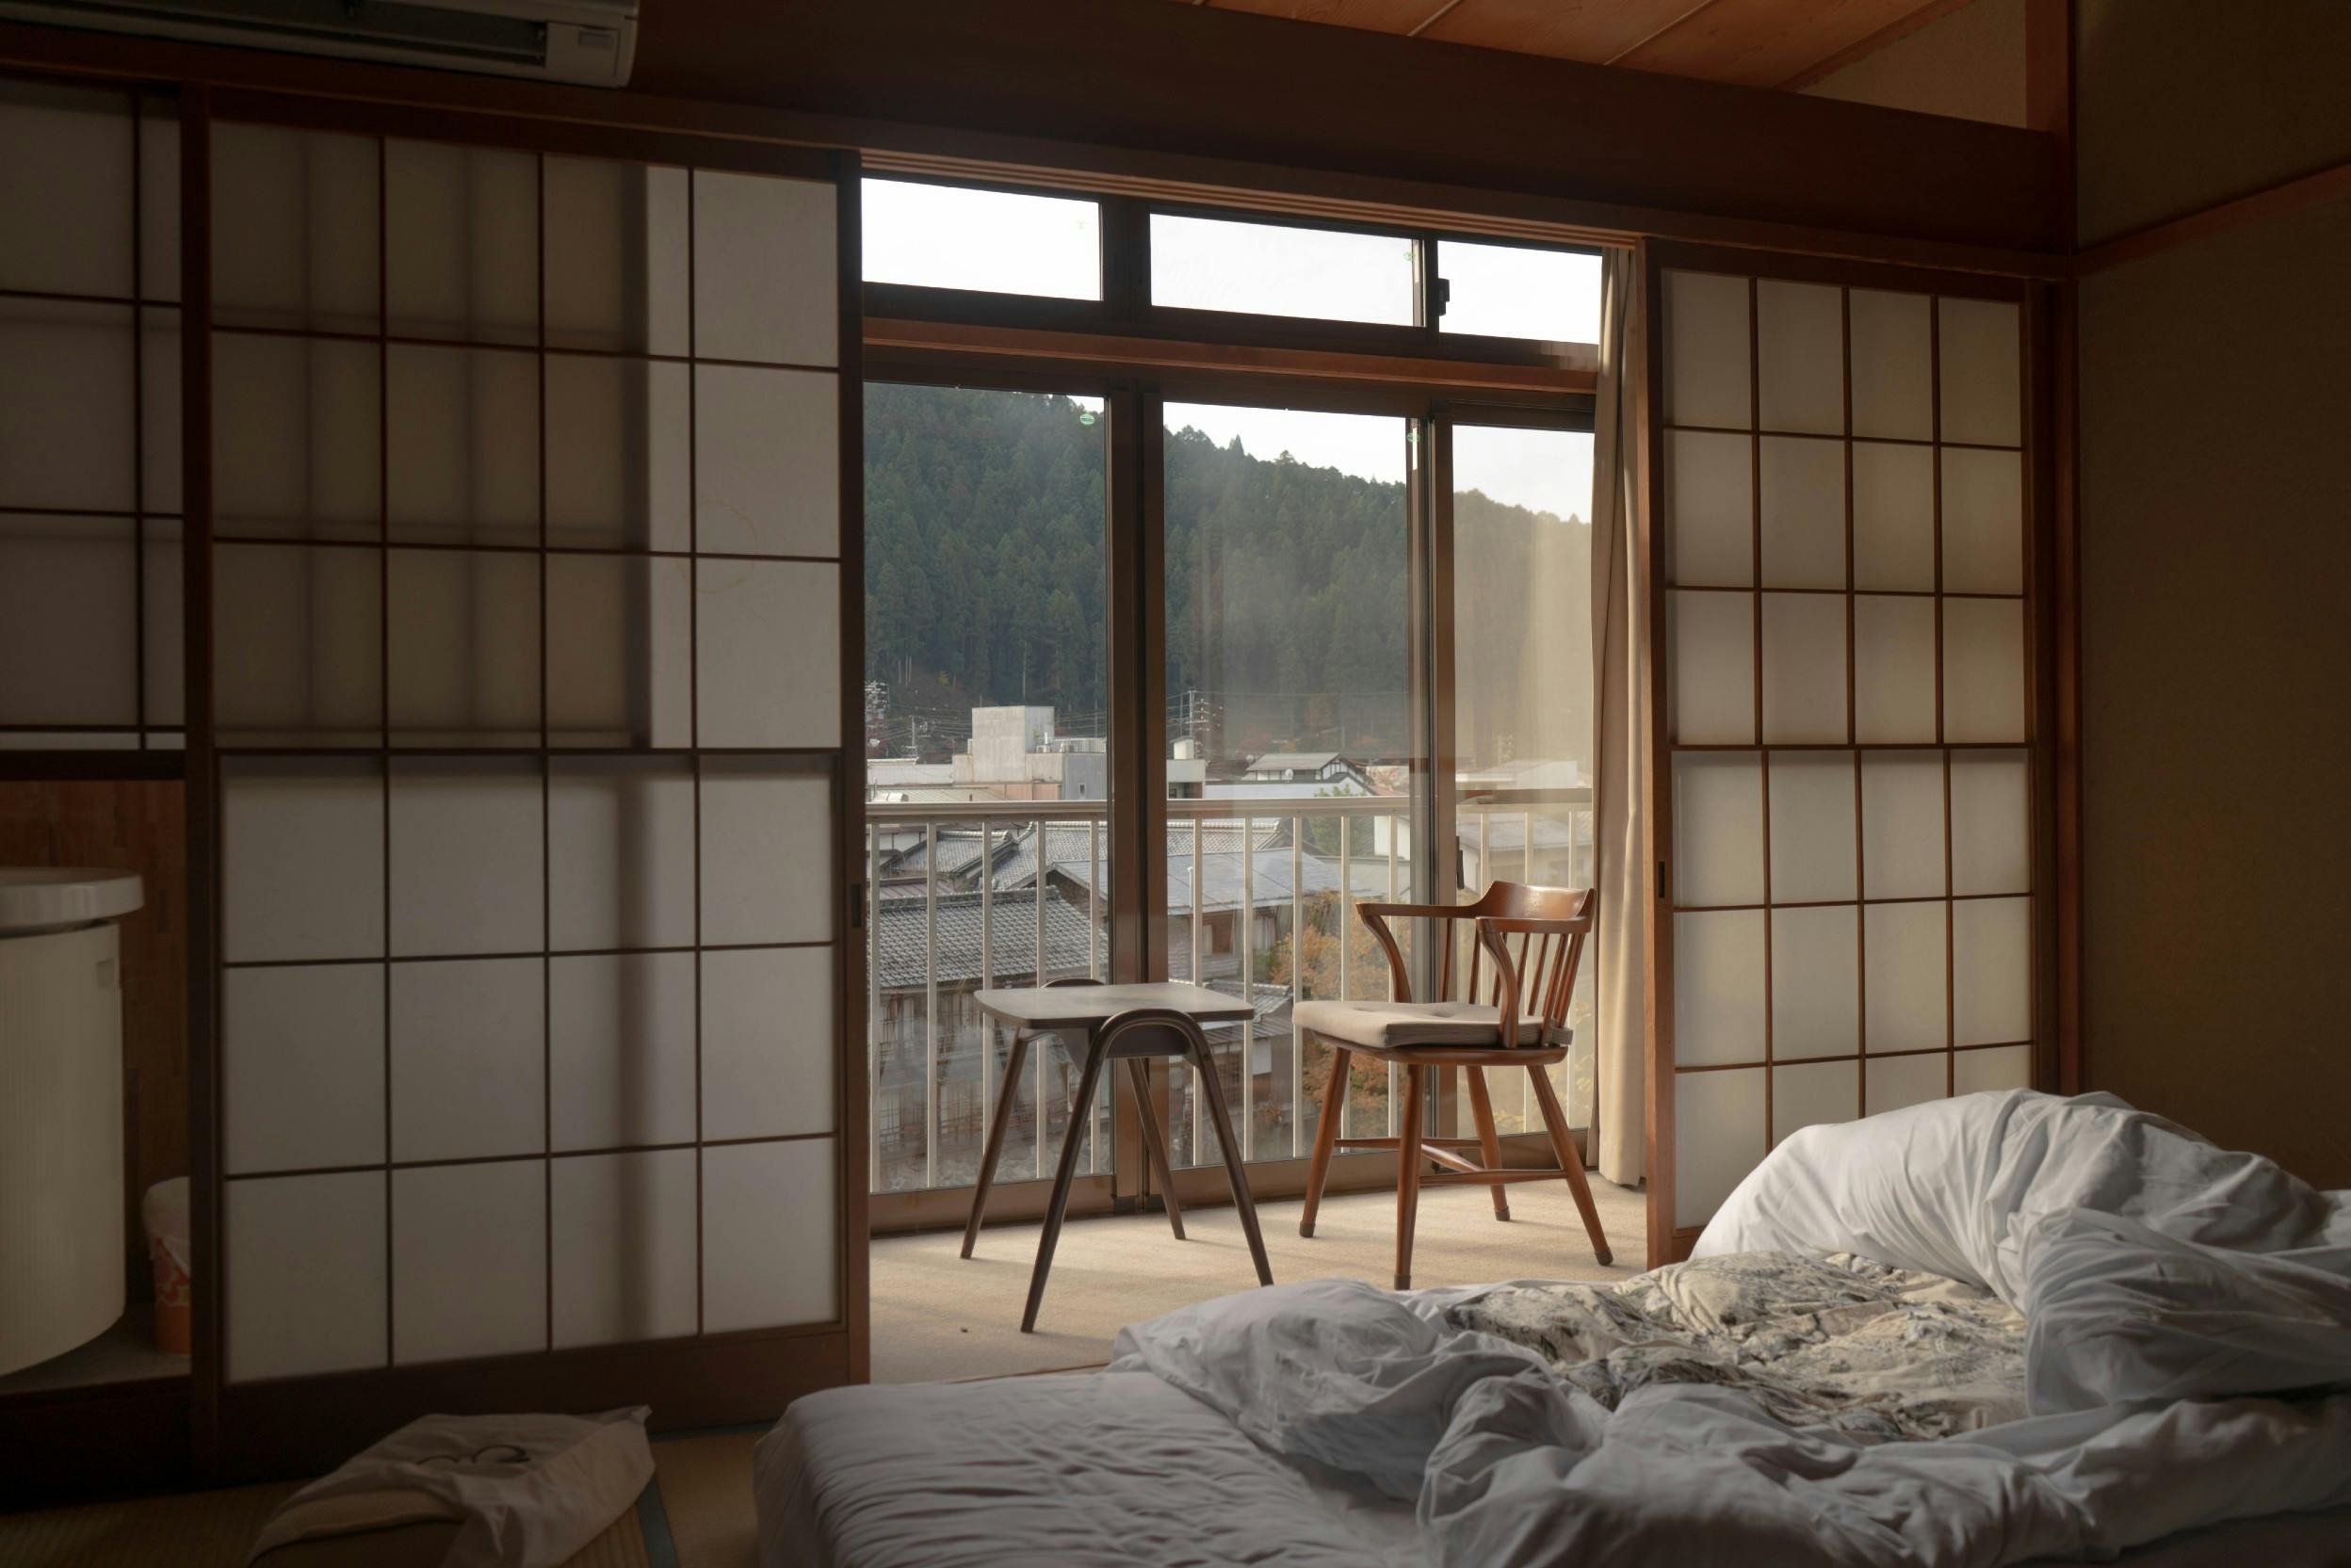 Chambre de style japonais, avec portes coulissantes, meubles en bois massif et futon au sol